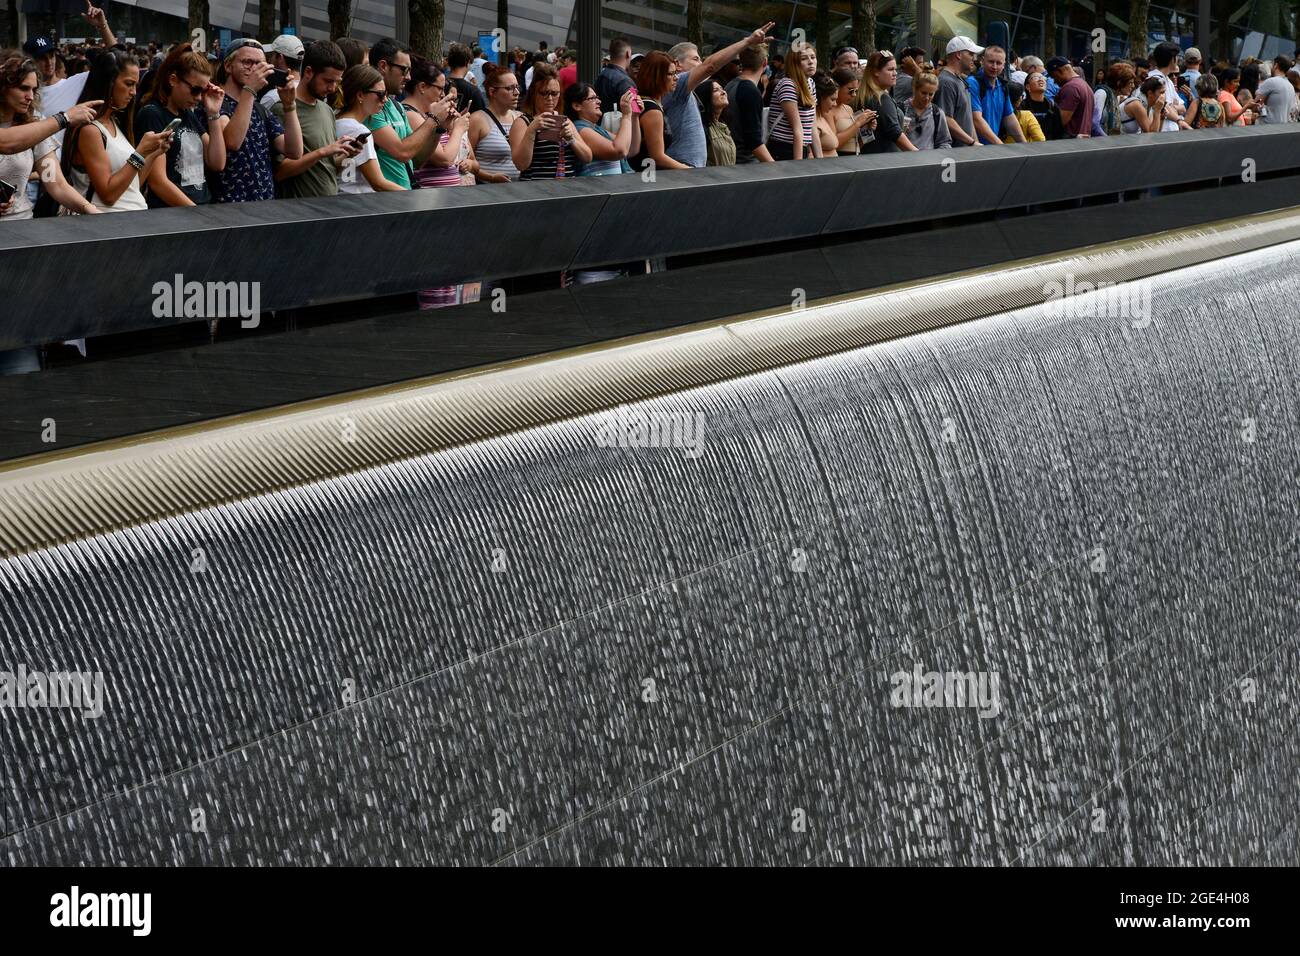 USA, New York City, 9/11 Memorial Ground Zero pour la mémoire des victimes de l'attaque terroriste du 11 septembre 2001 à la tour du centre du commerce mondial, bassin d'eau, piscine réfléchissante, eau coulant, cascade Banque D'Images